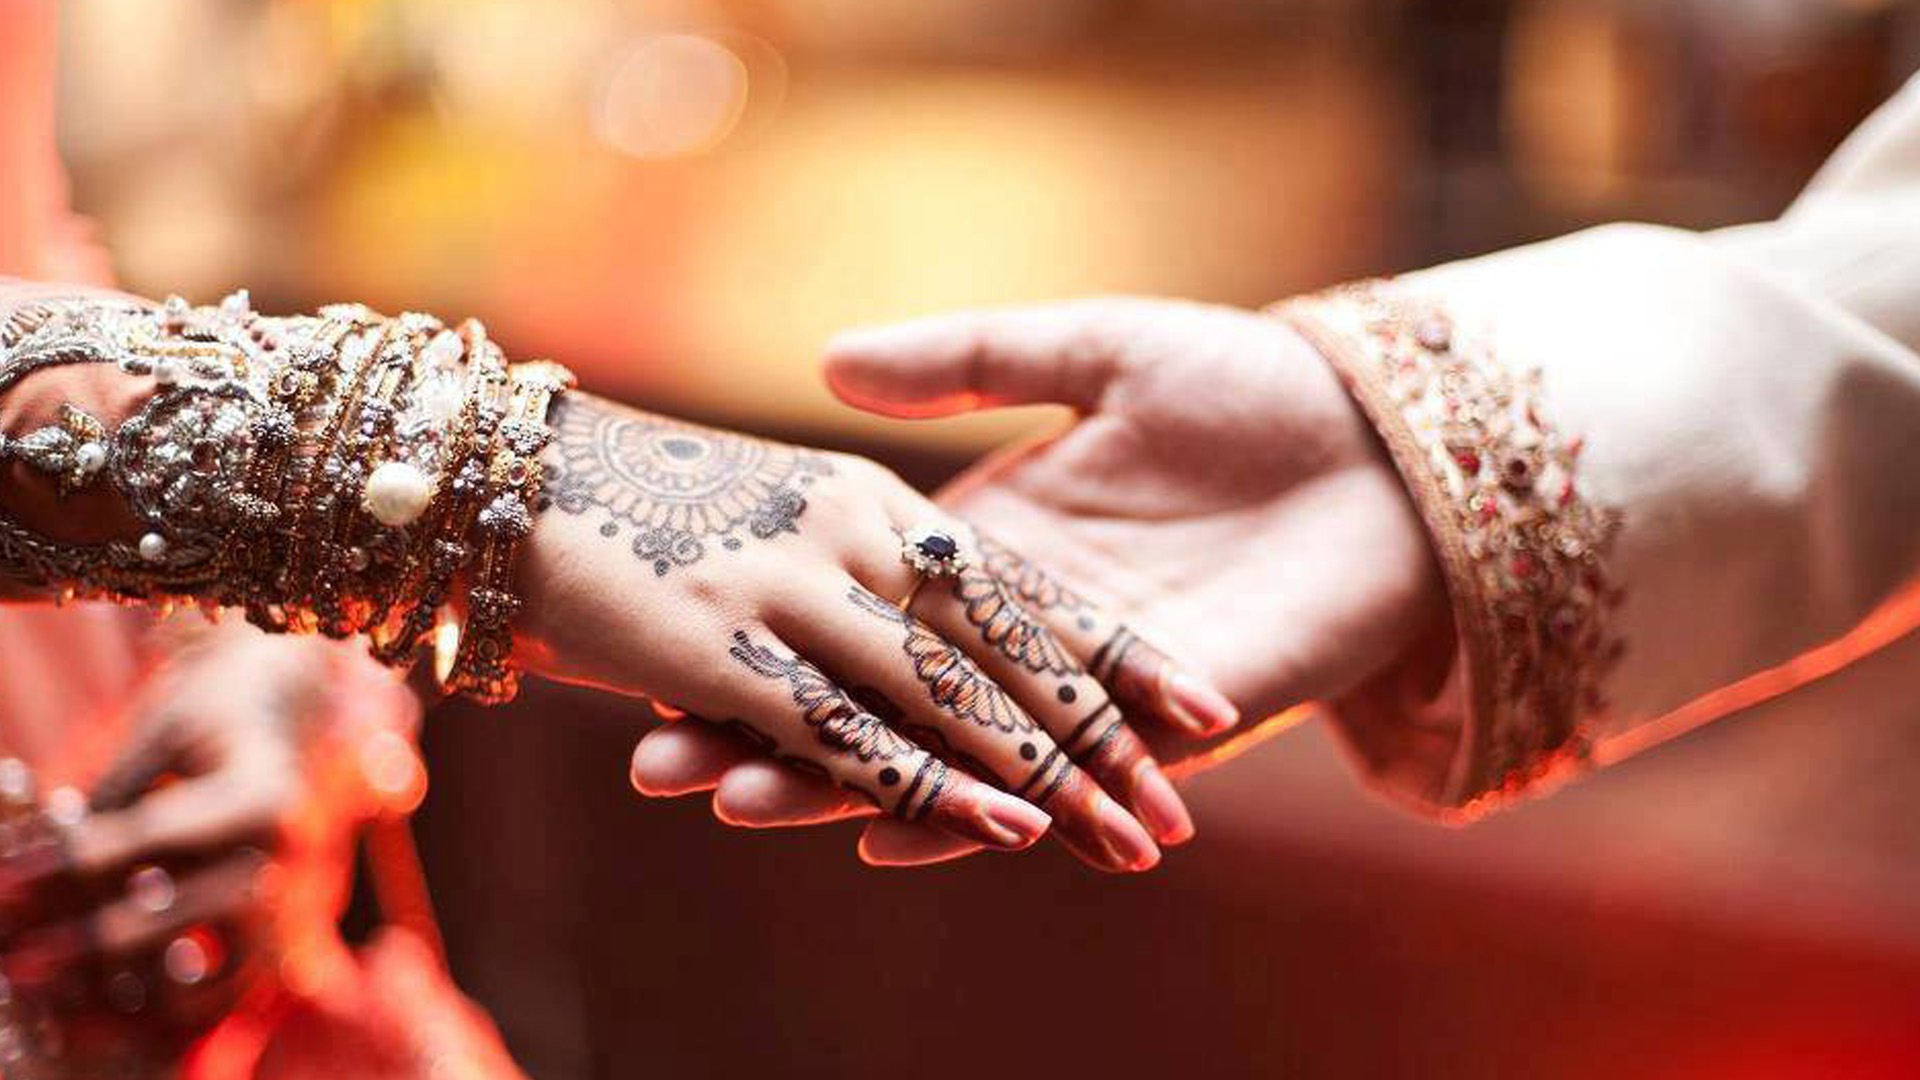 پنجاب بھر کے تاریخی مقامات پر شادی بیاہ کی شوٹنگ کے خواہشمند جوڑوں کے لئے بری خبر آگئی